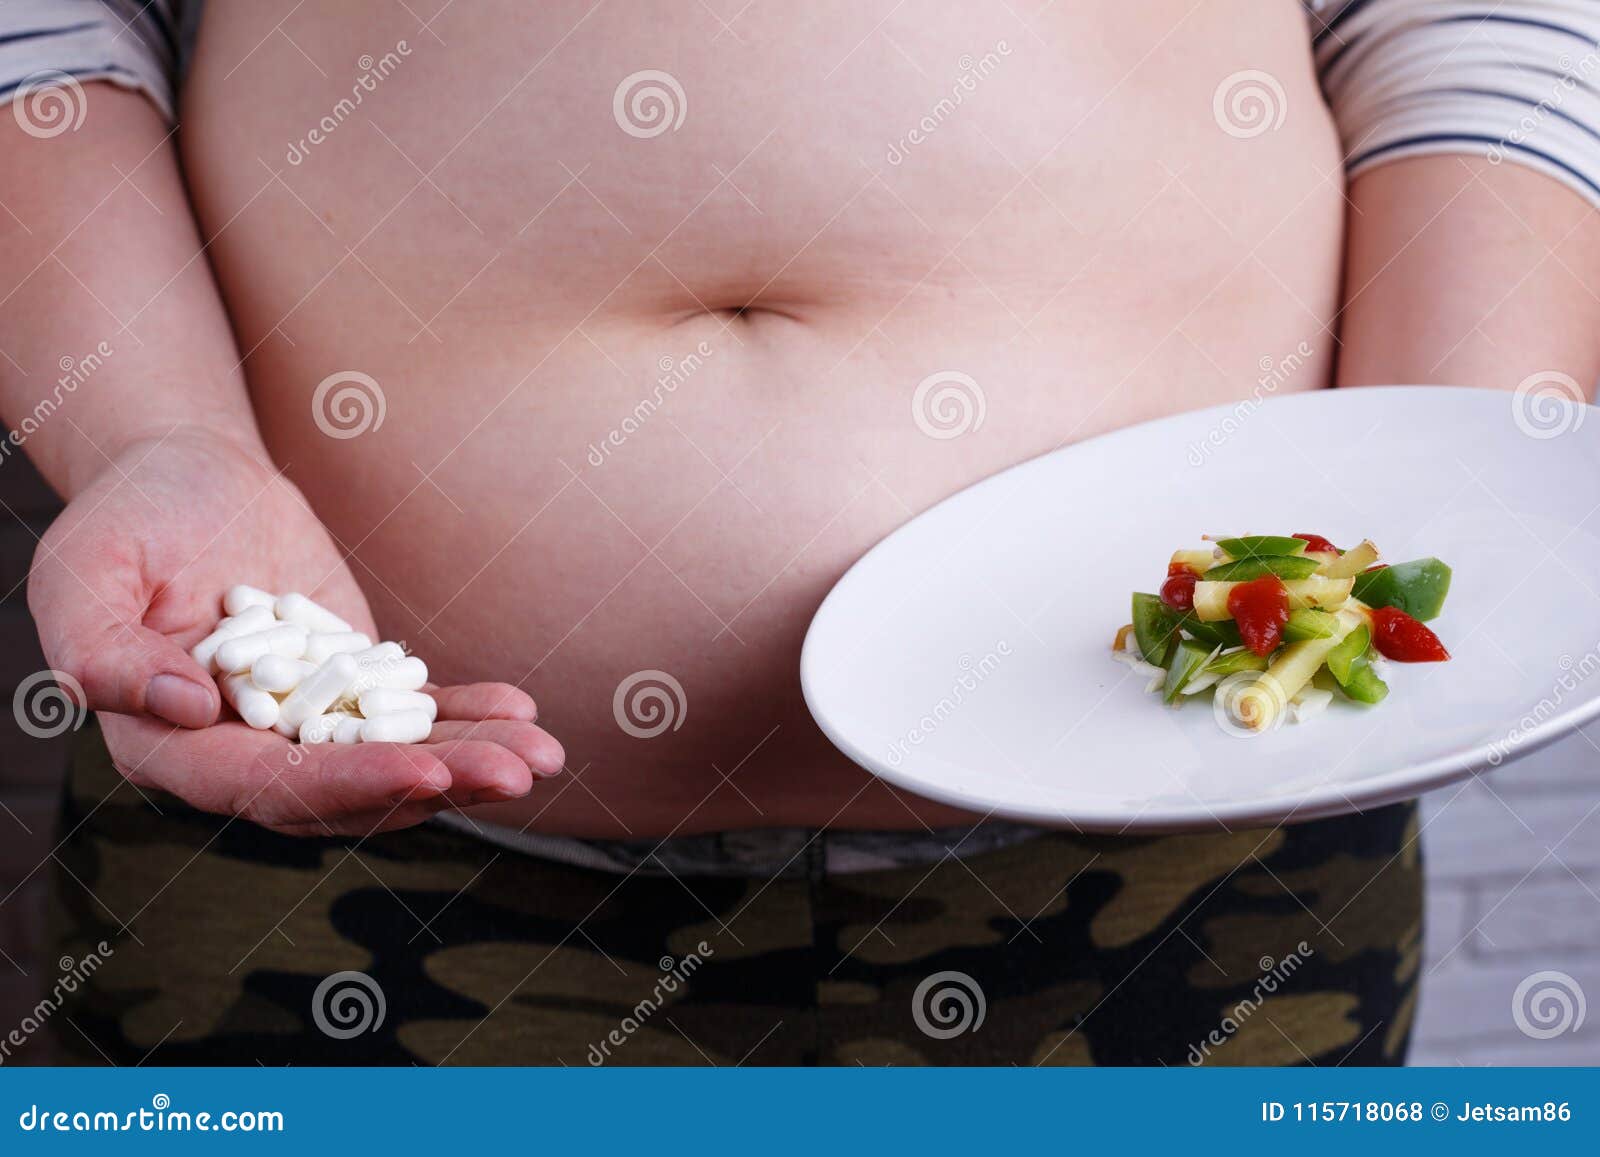 Διατροφικές διαταραχές: 5 σοβαρές επιπτώσεις στην υγεία (εικόνες)